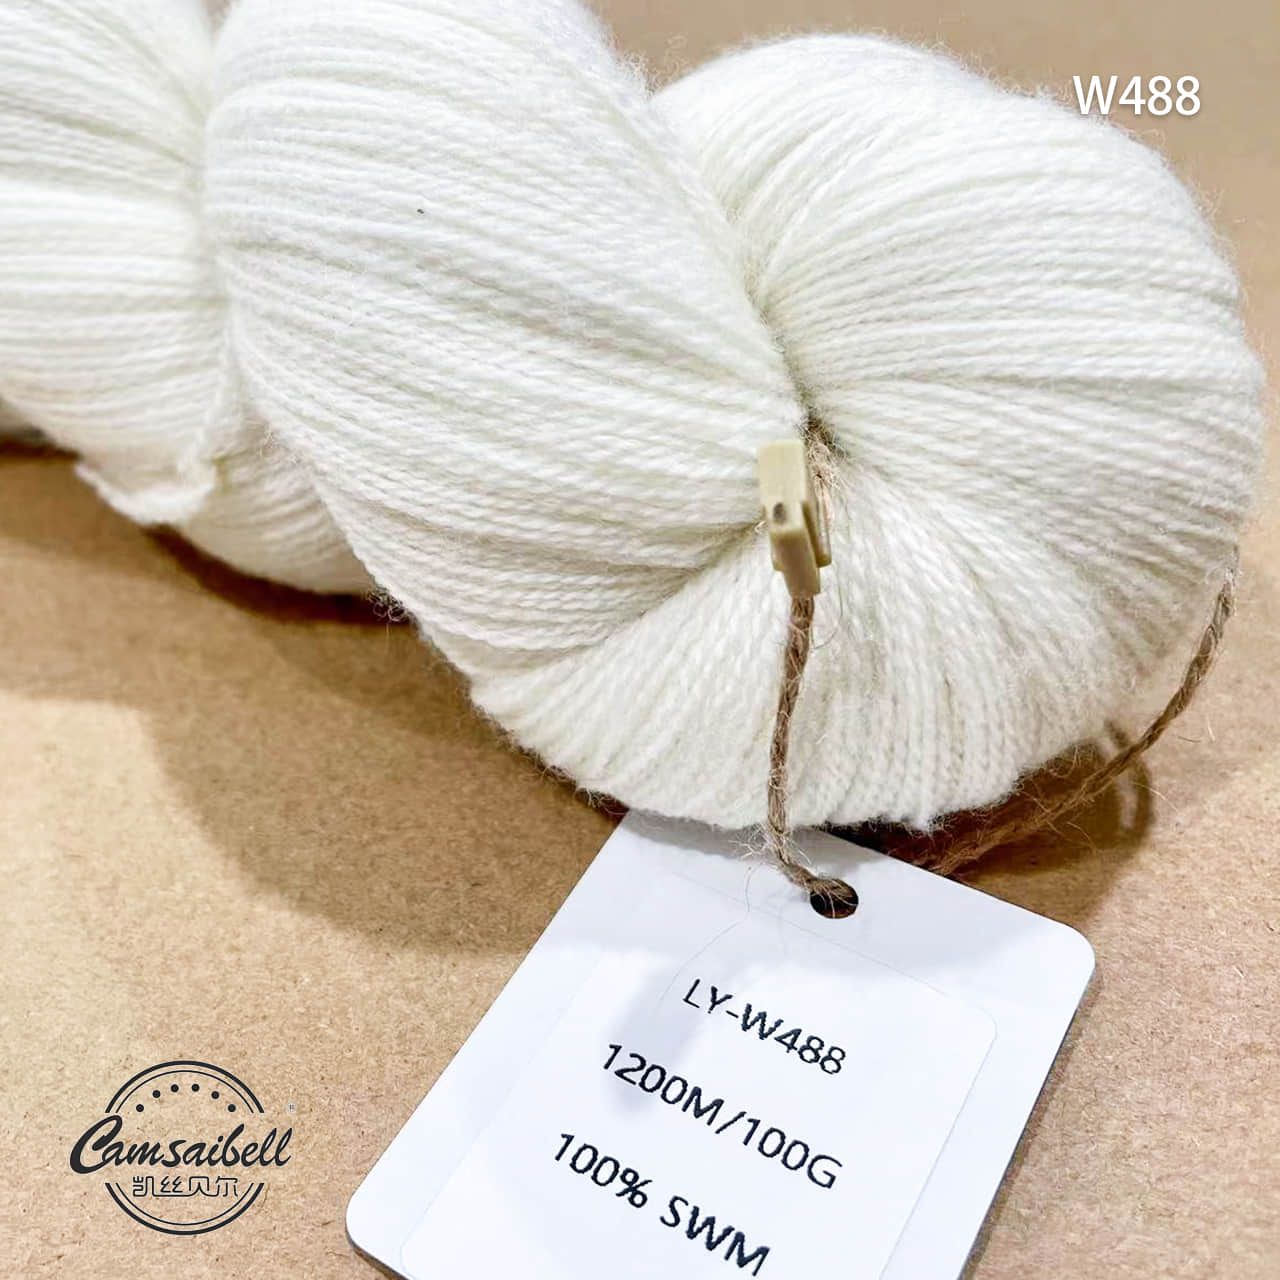 lace yarn W488 1200m/100g.